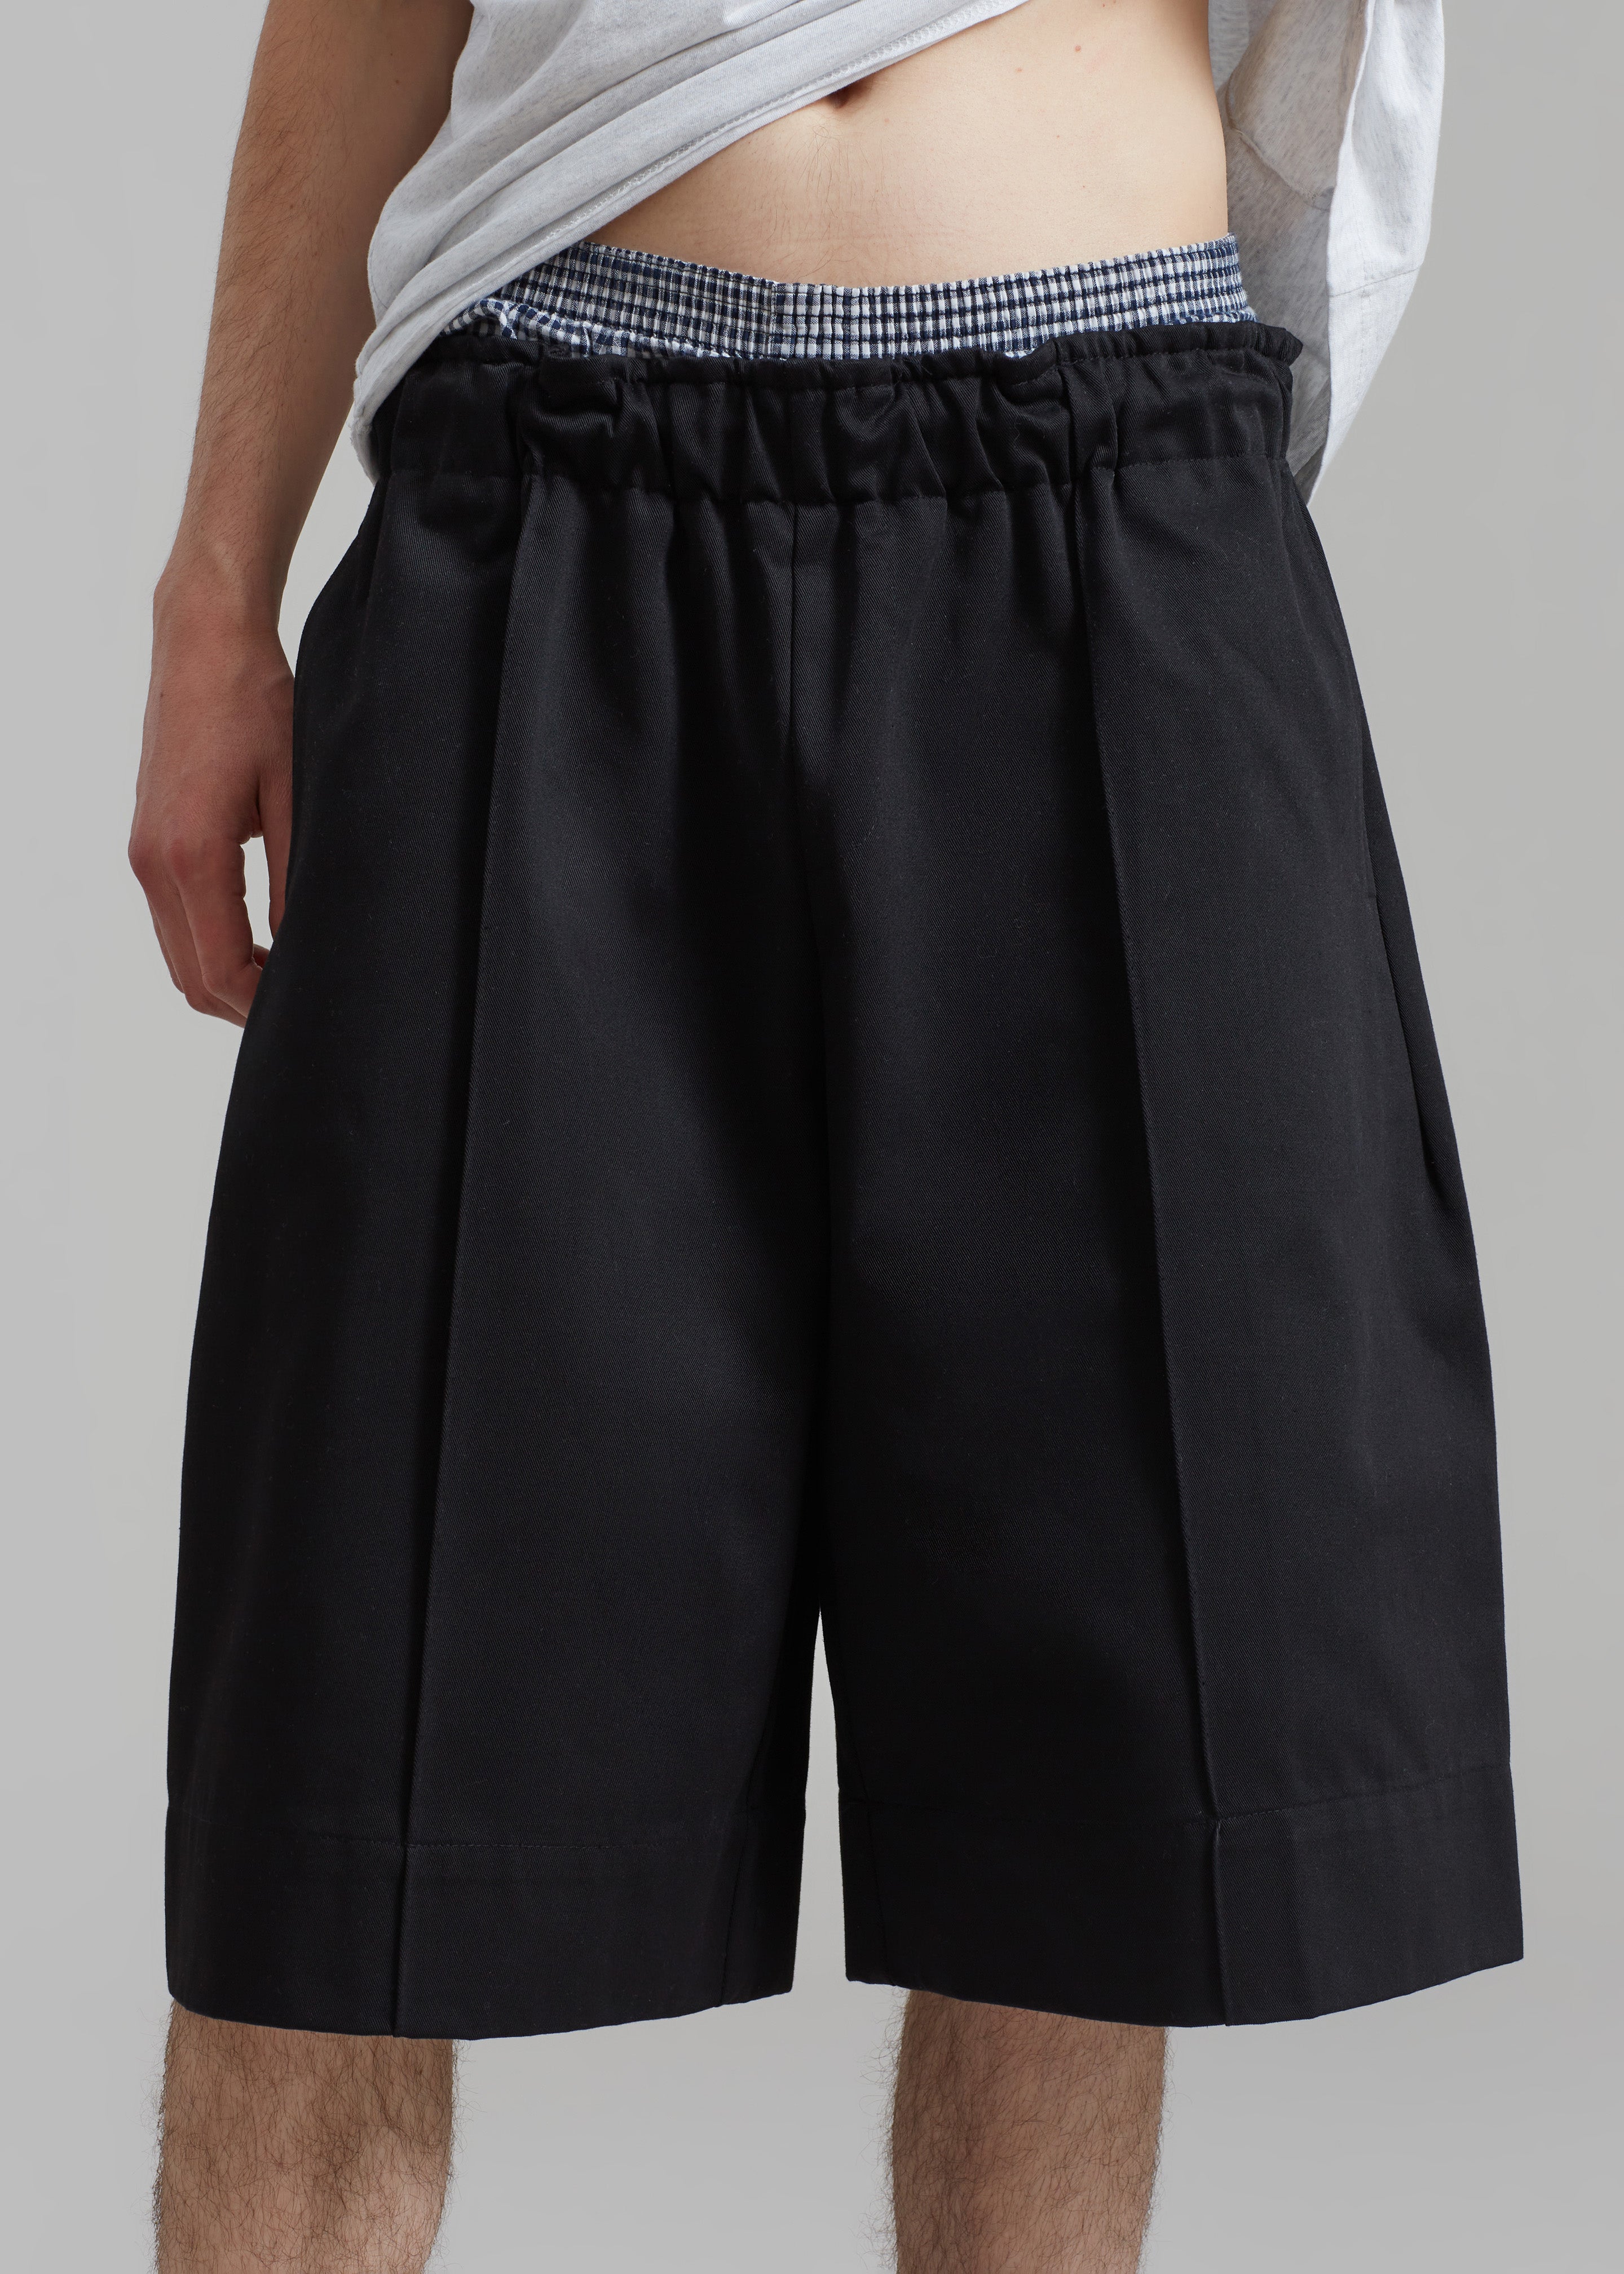 Adan Bermuda Shorts - Black - 5